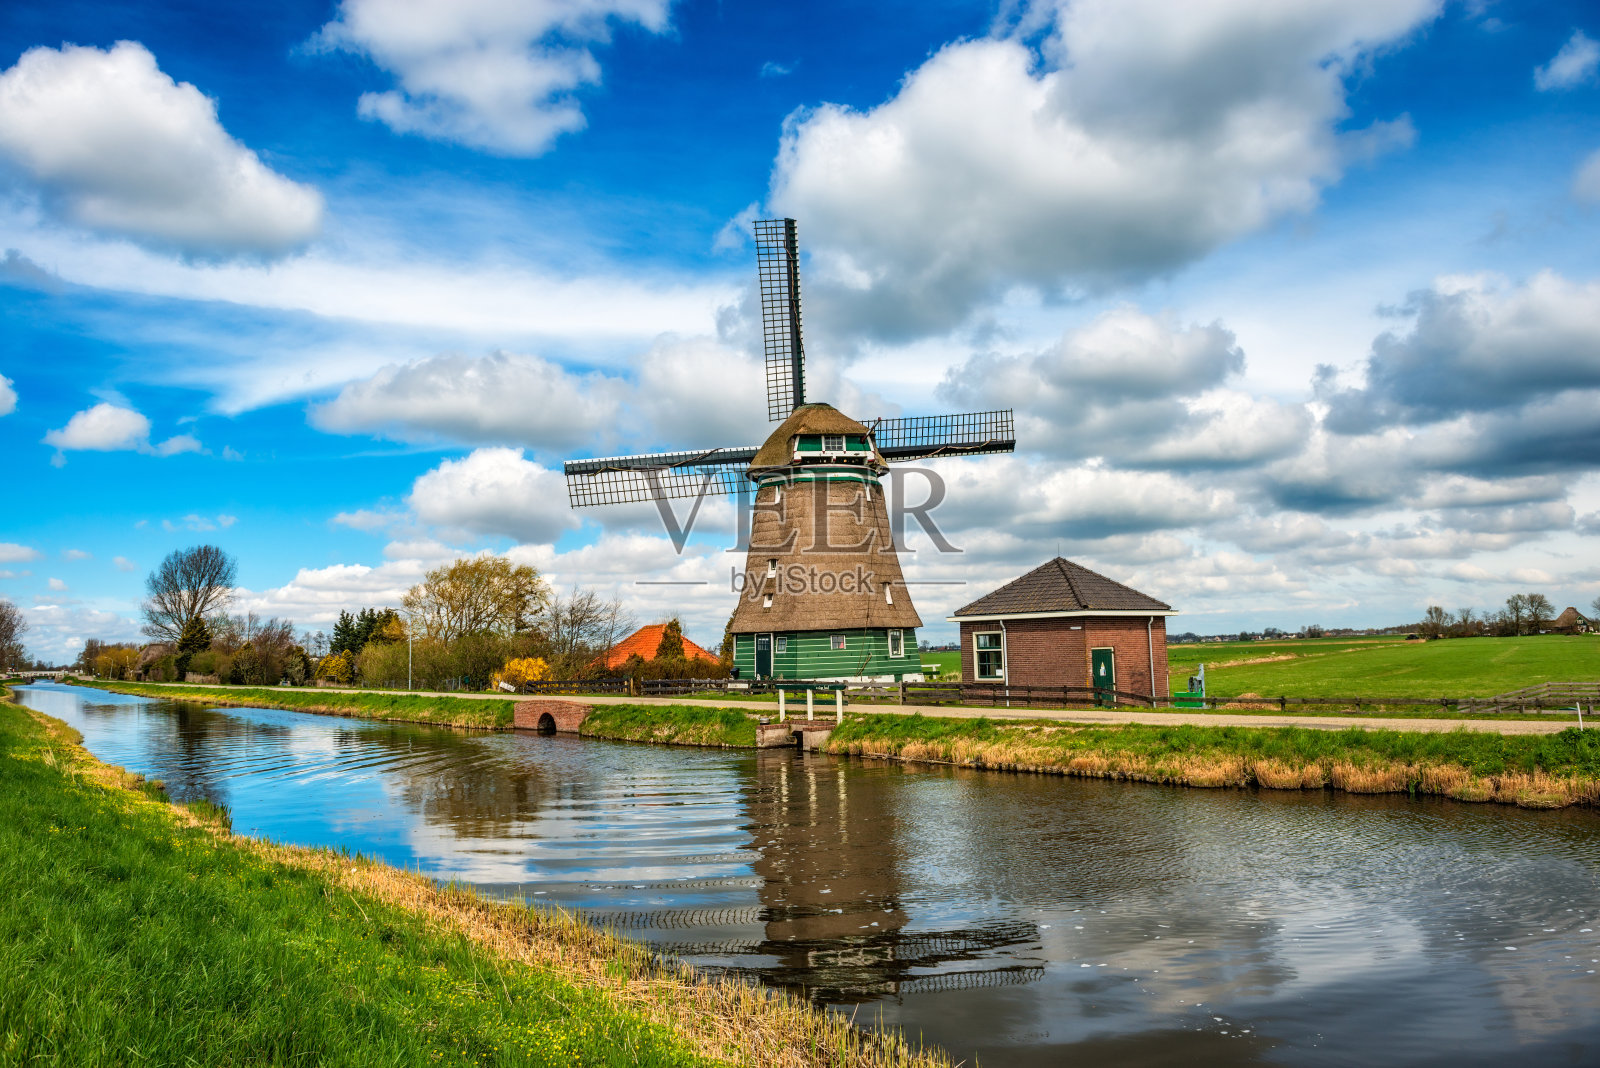 荷兰唯美风车高清风景壁纸_桌面壁纸_mm4000图片大全